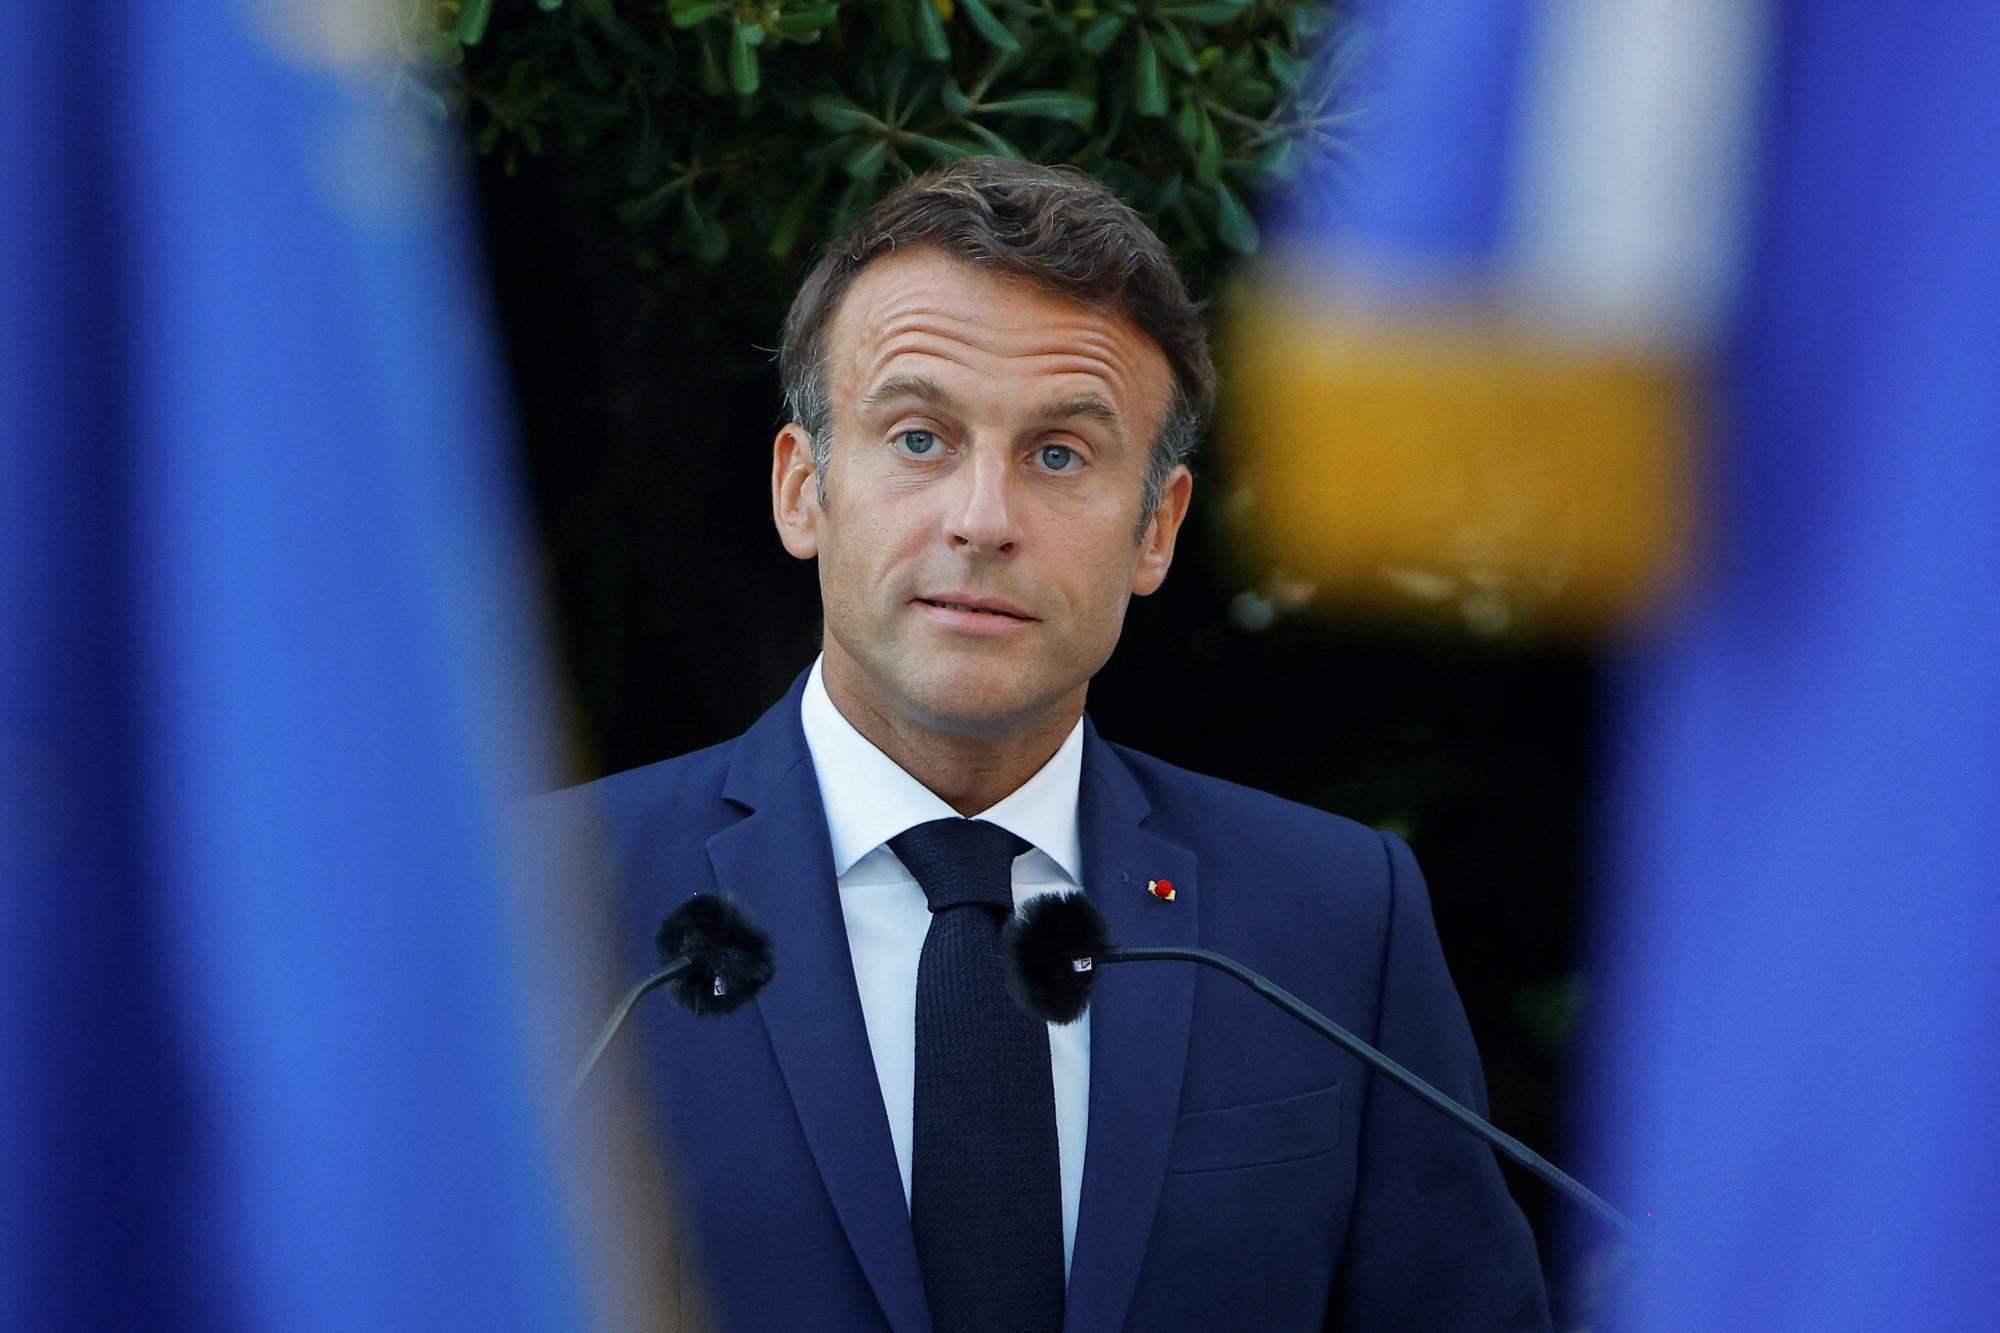 Macron kemény beszédet mondott: El kell fogadnunk, hogy a szabadságnak ára van